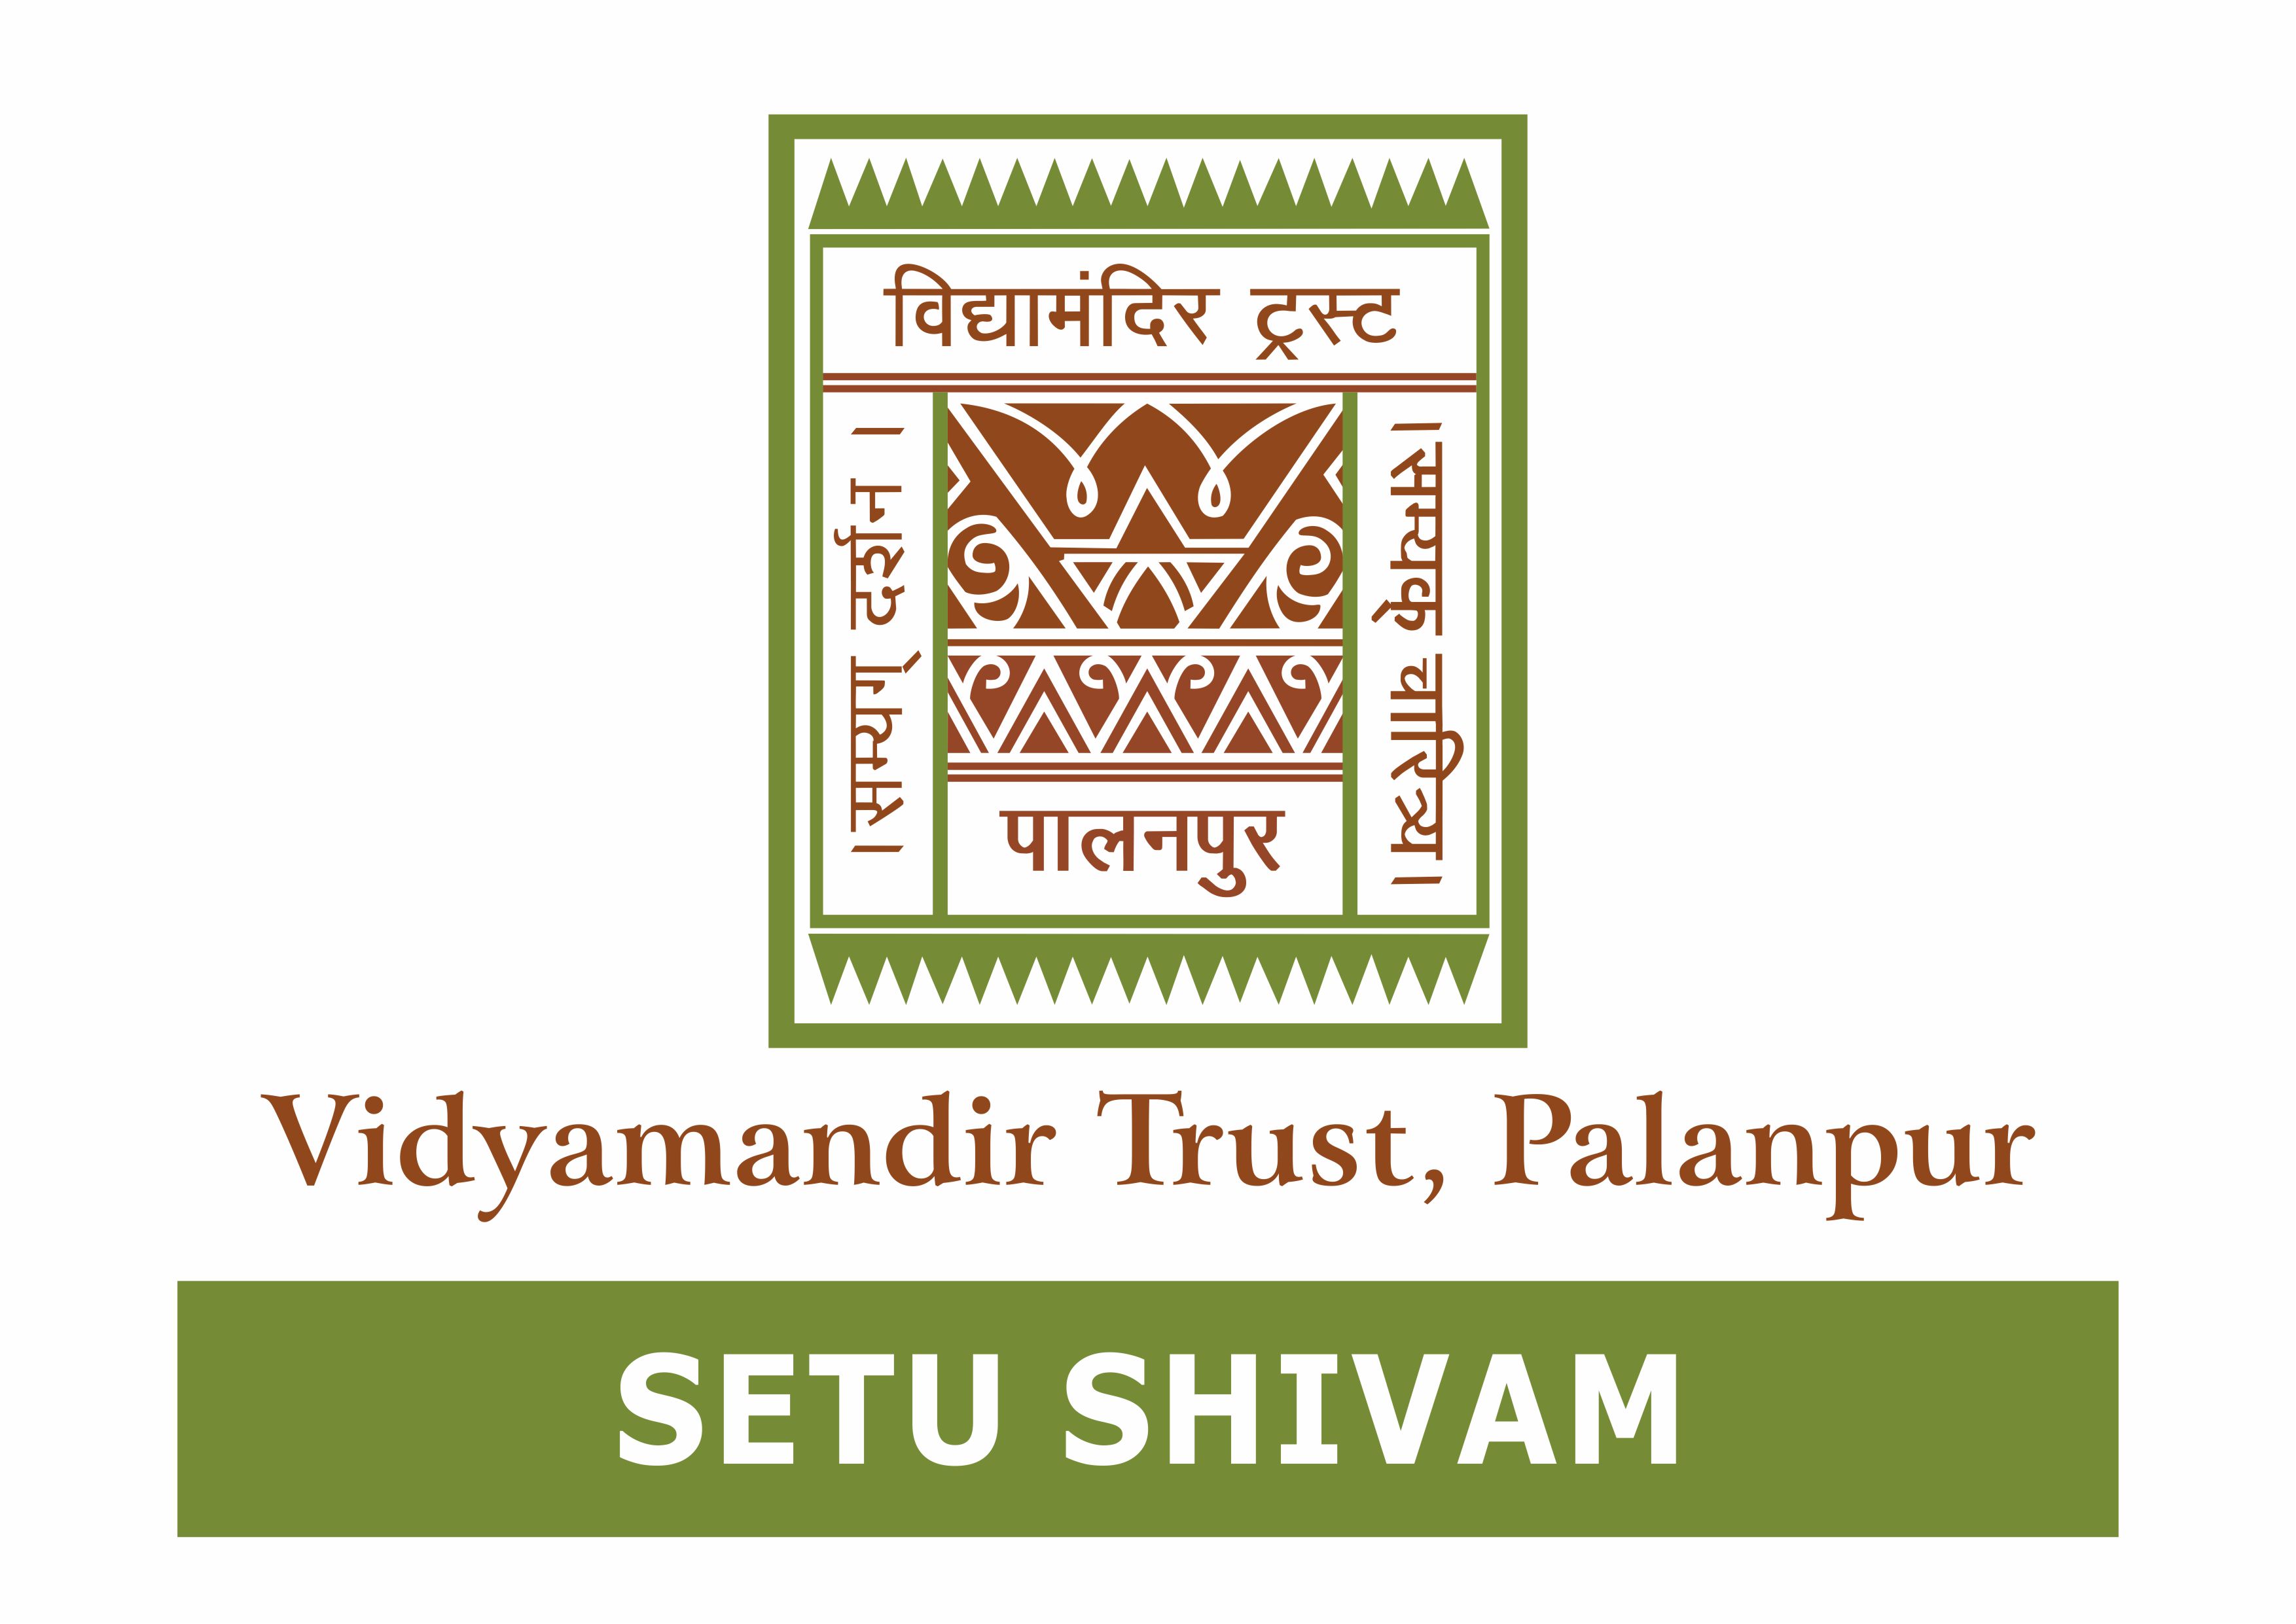 Setu Shivam - Vidyamandir Trust, Palanpur